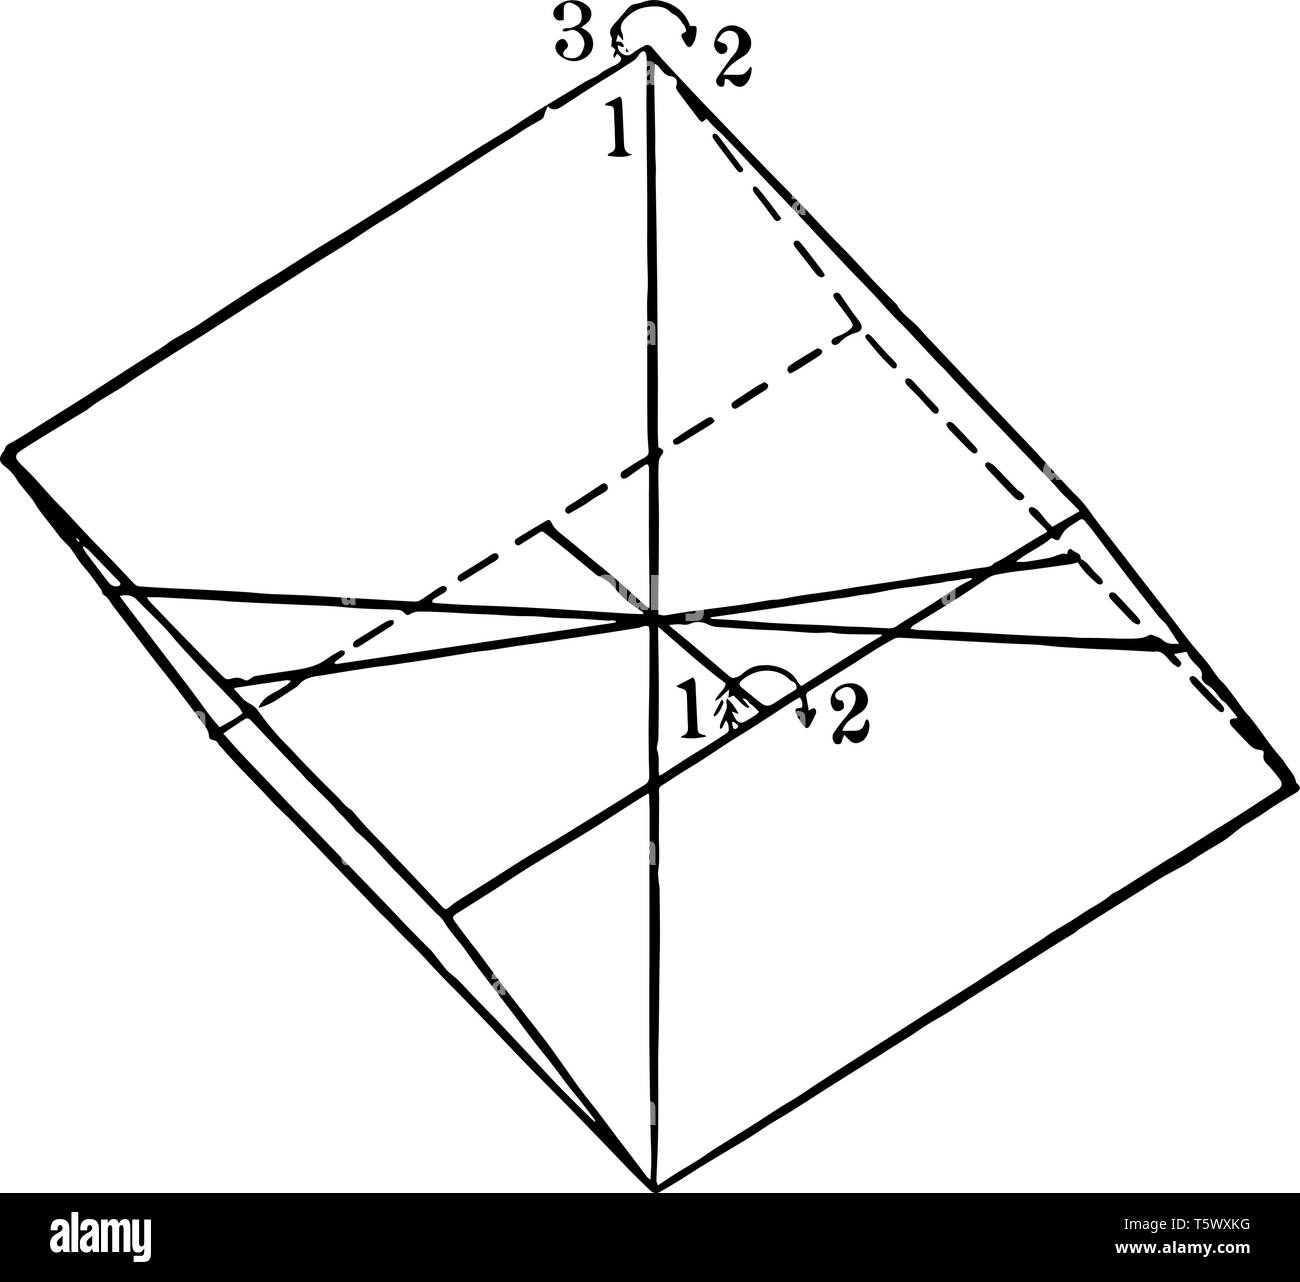 Dieses Diagramm stellt die Symmetrie der Rhomboedrisch Klasse und die drei horizontalen kristallographischen Achsen vintage Strichzeichnung oder Gravur Abbildung. Stock Vektor